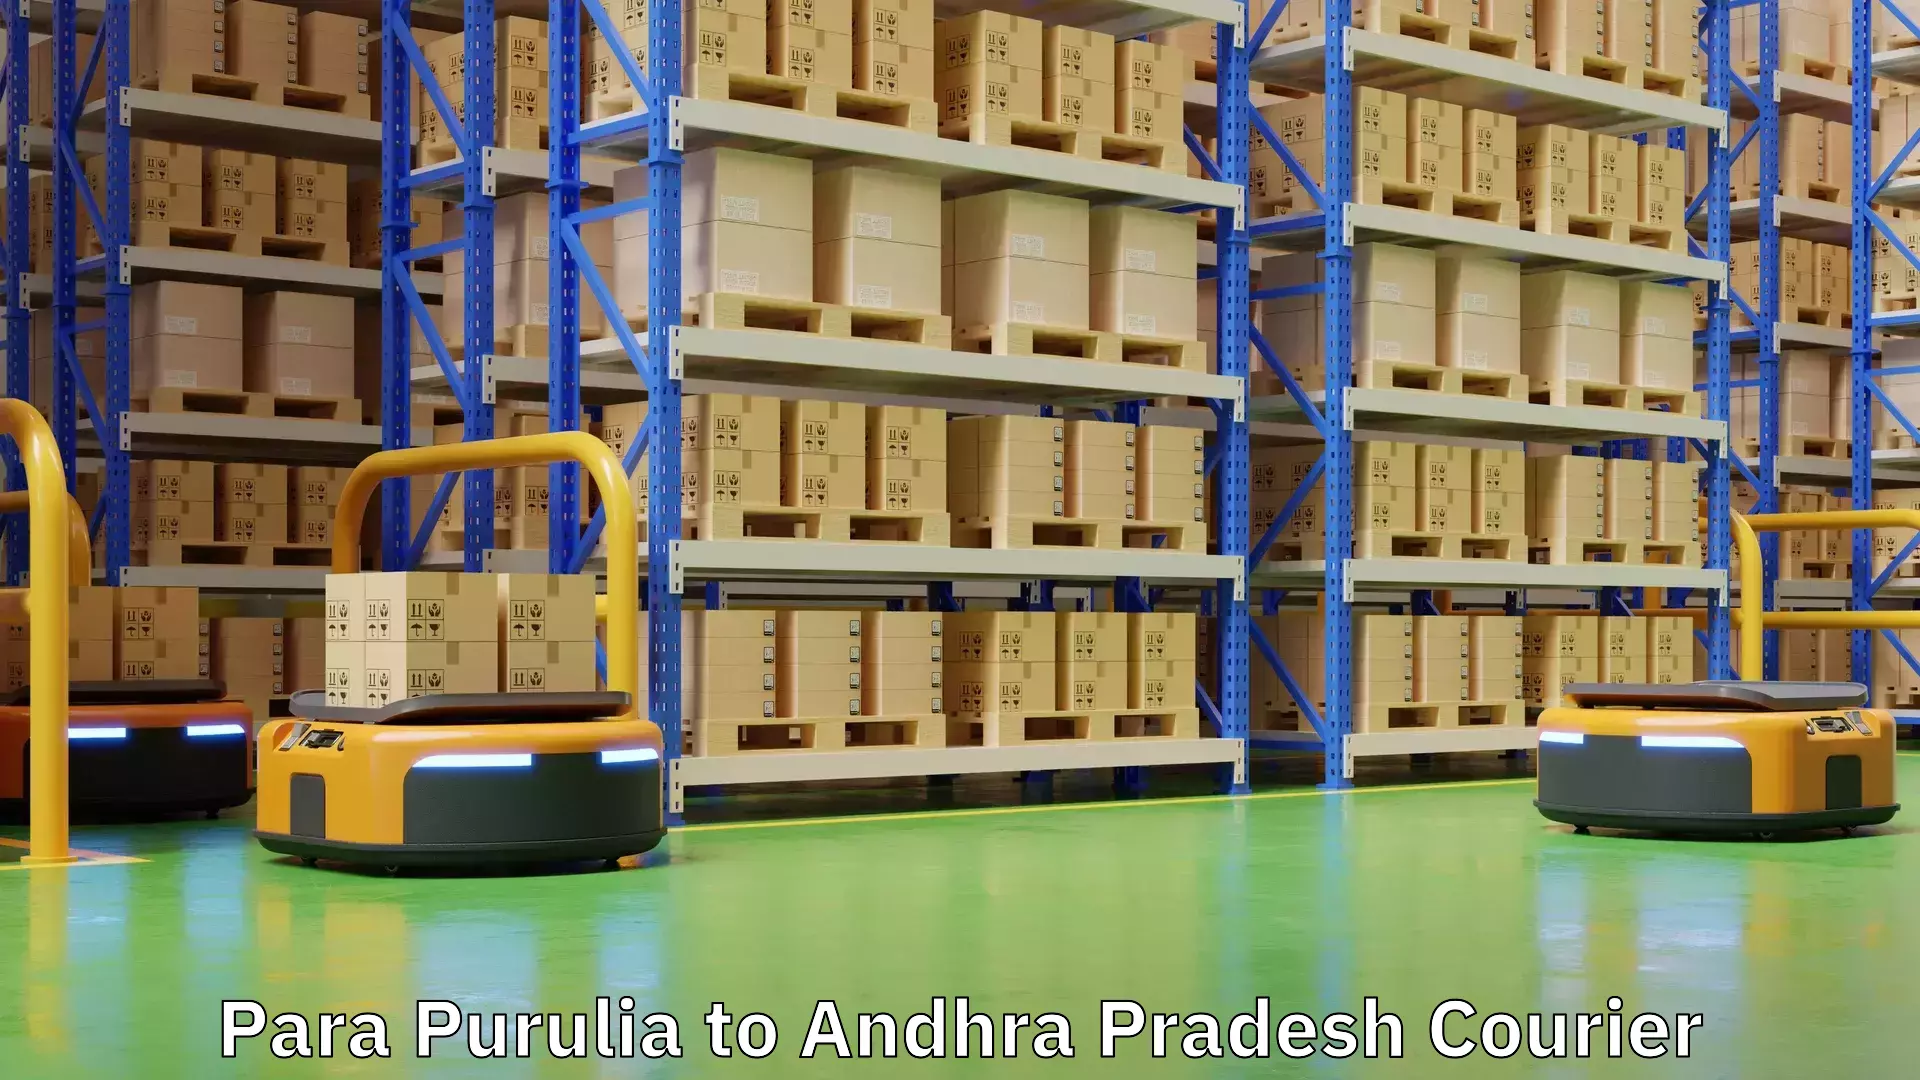 Return courier service Para Purulia to Andhra Pradesh